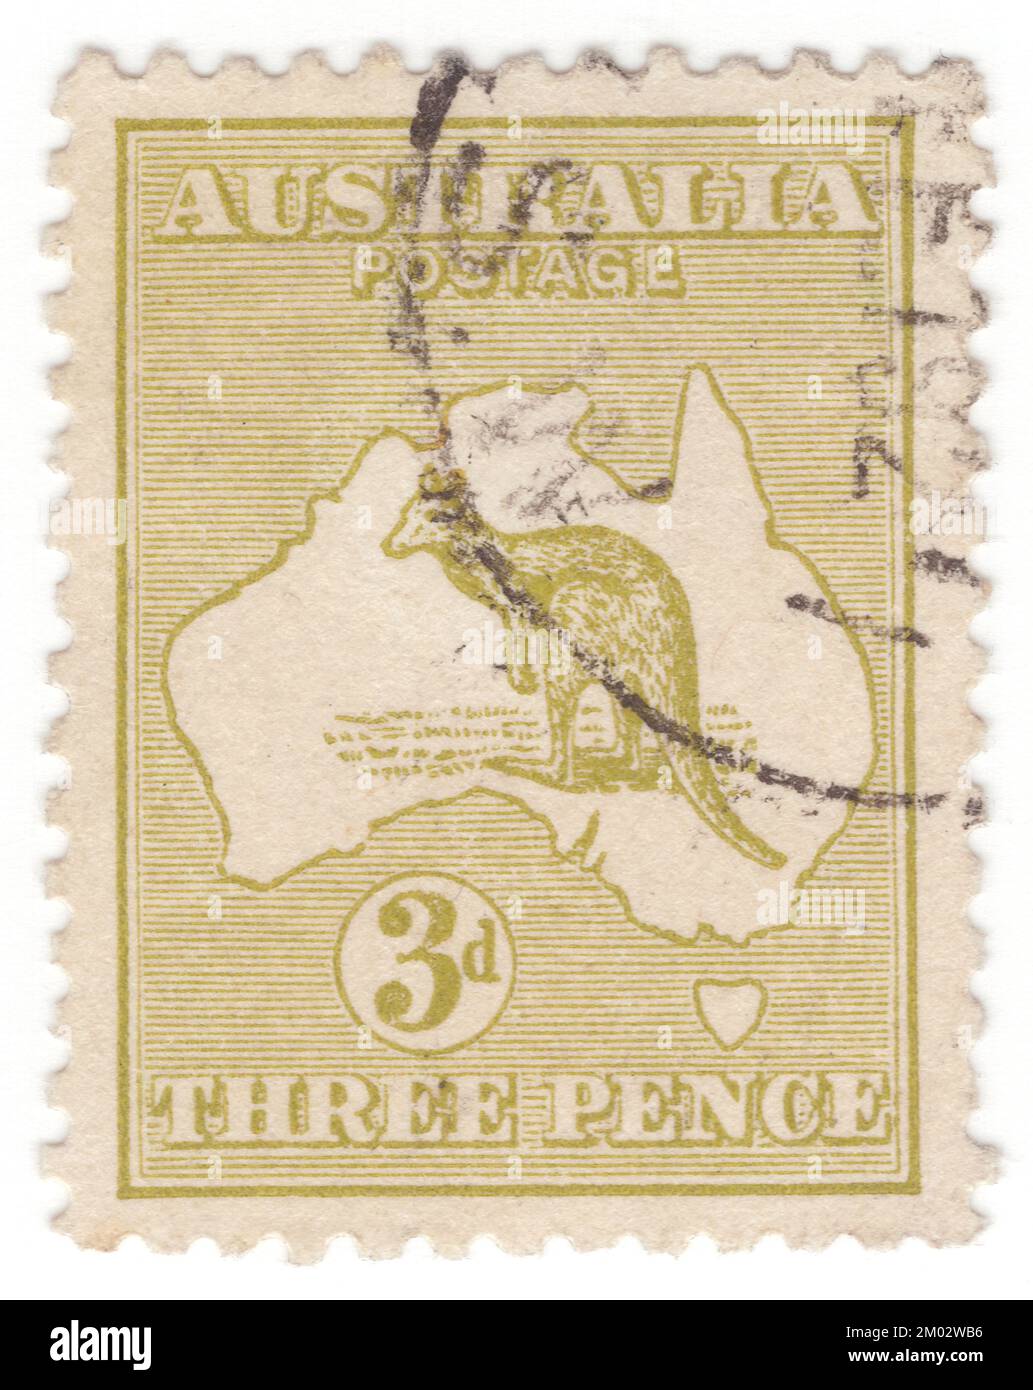 AUSTRALIE — 1913: Un timbre-poste de 3 penses à l'olive-bister représentant le kangourou et la carte de l'Australie. L'Australie est le continent habité le plus ancien, le plus plat et le plus sec, avec les sols les moins fertiles. C'est un pays megadiverse, et sa taille lui donne une grande variété de paysages et de climats, avec des déserts au centre, des forêts tropicales humides dans le nord-est, et des chaînes de montagnes dans le sud-est. Le kangourou est un symbole reconnaissable de l'Australie. Première émission de timbres-poste australiens. Le kangourou et l'émeu se trouvent sur les armoiries australiennes Banque D'Images